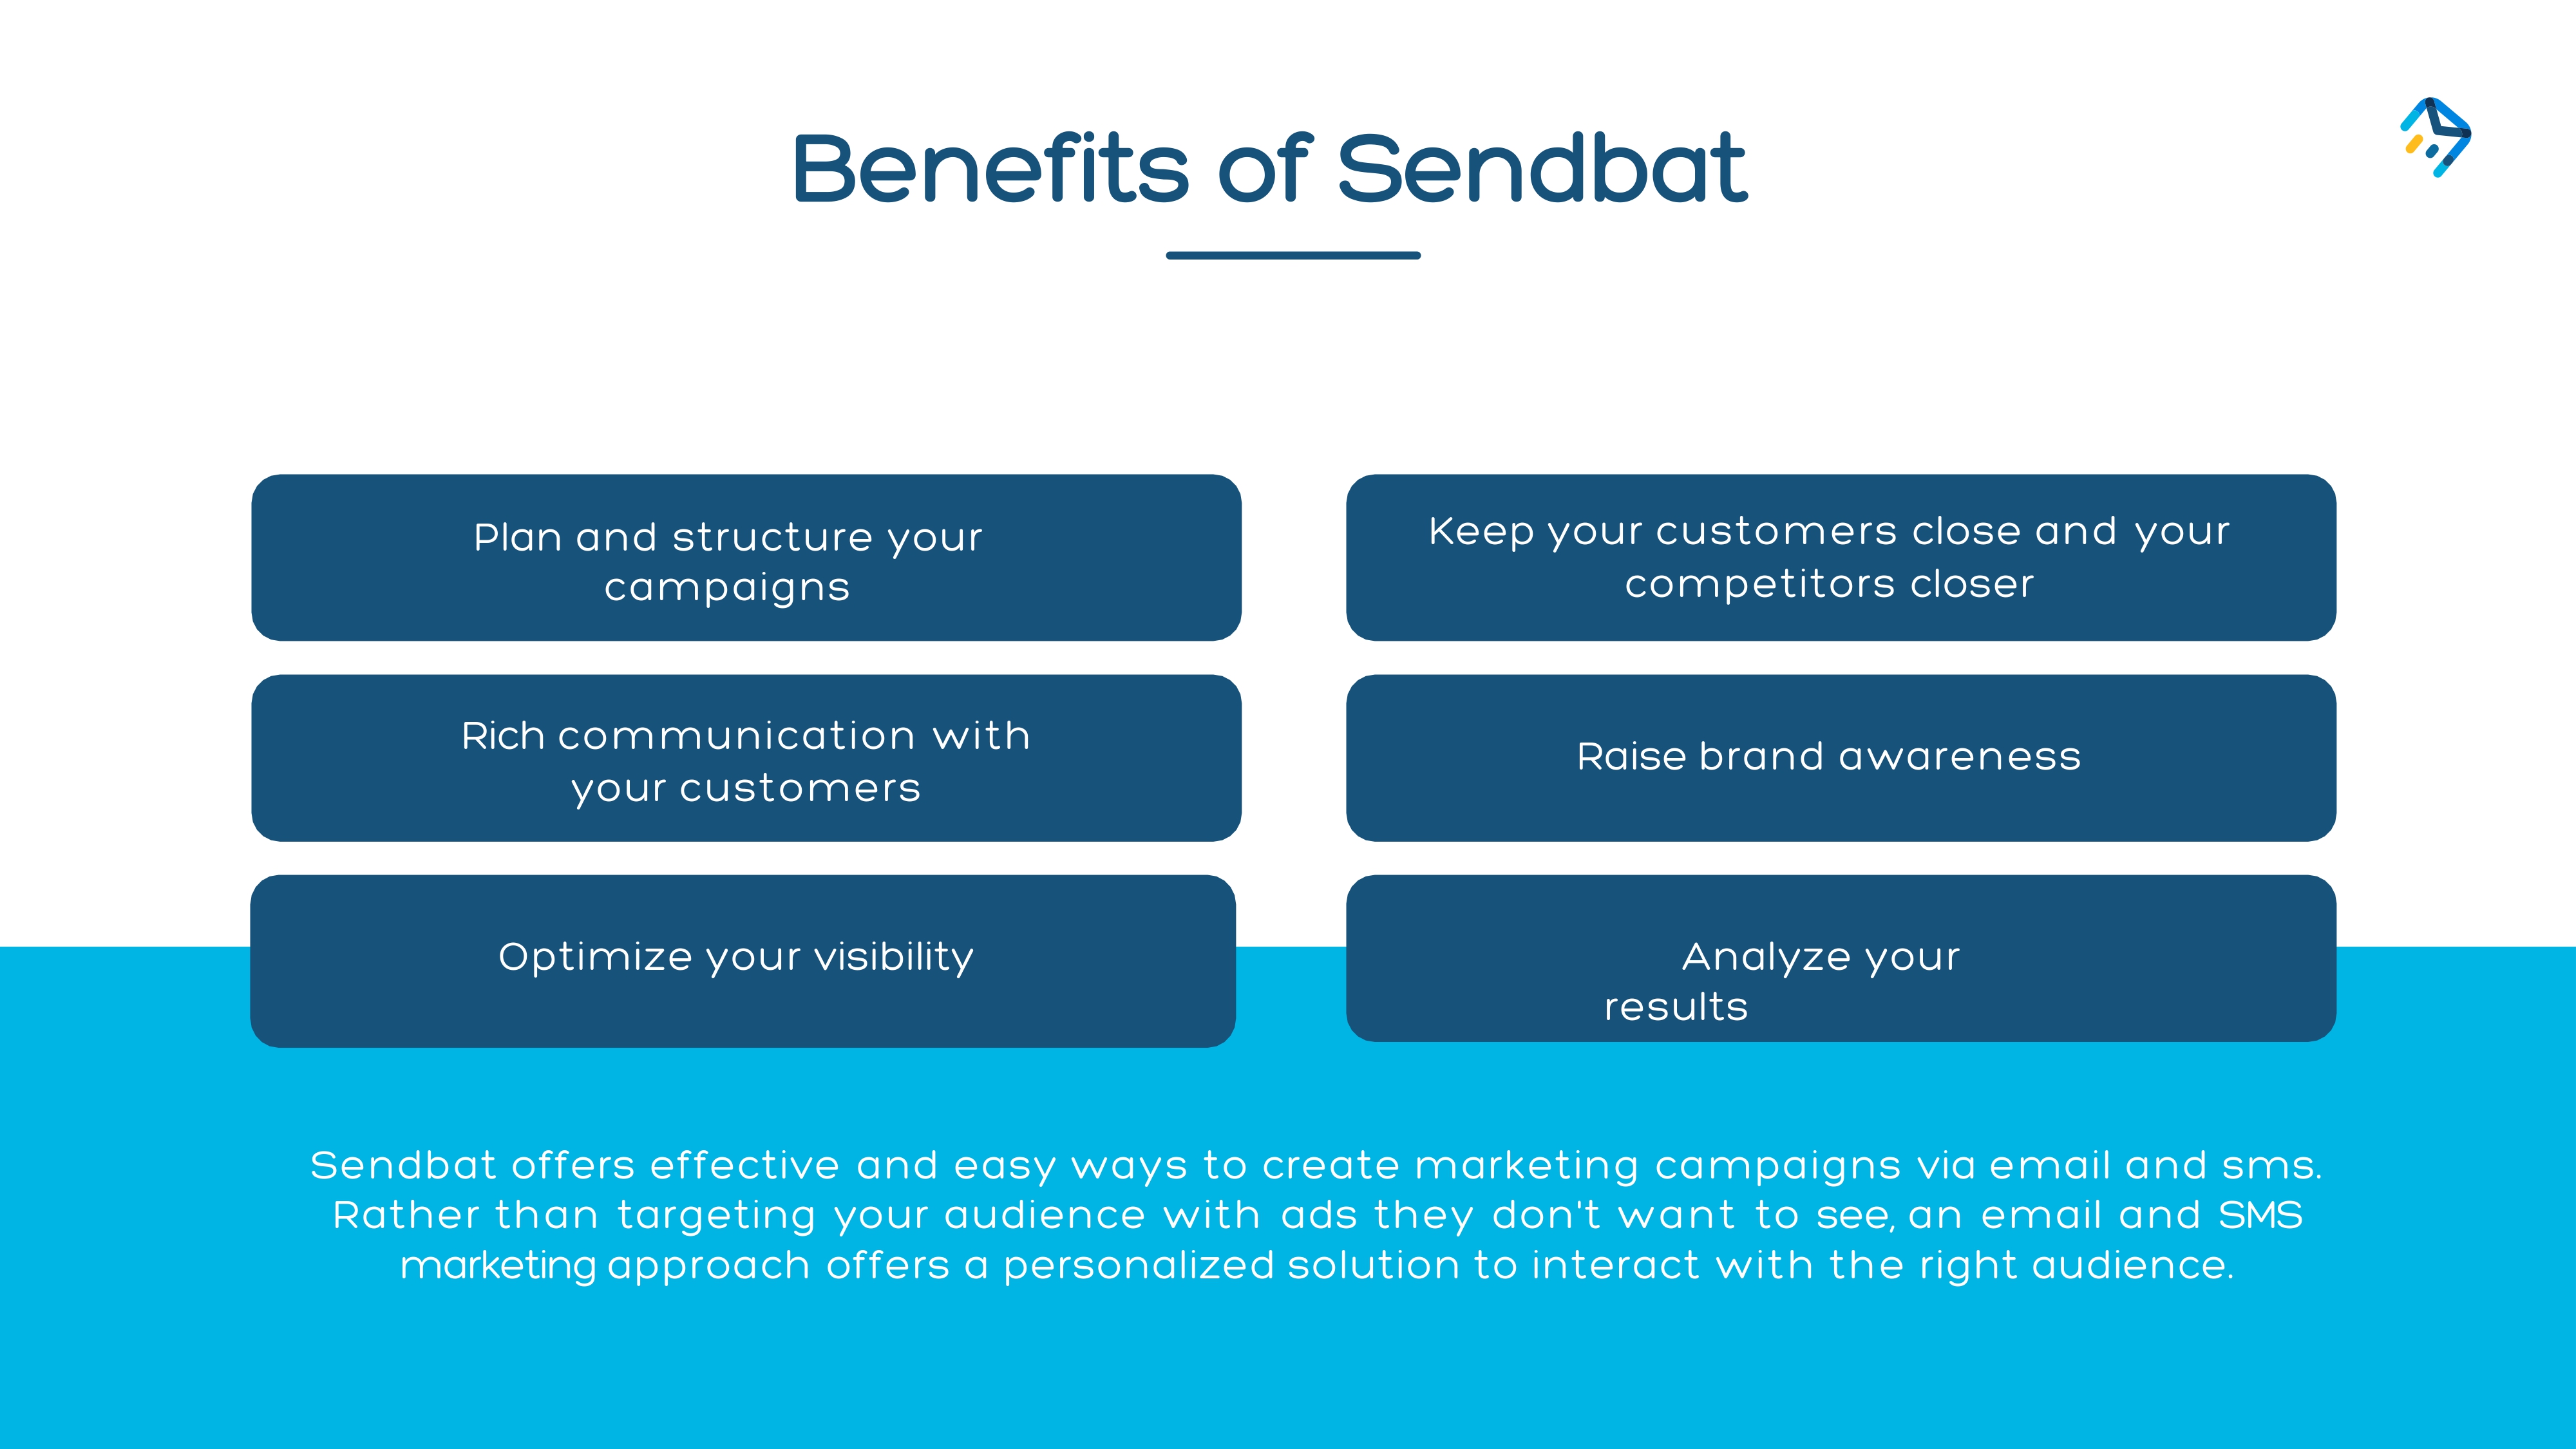 Benefits of Sendbat